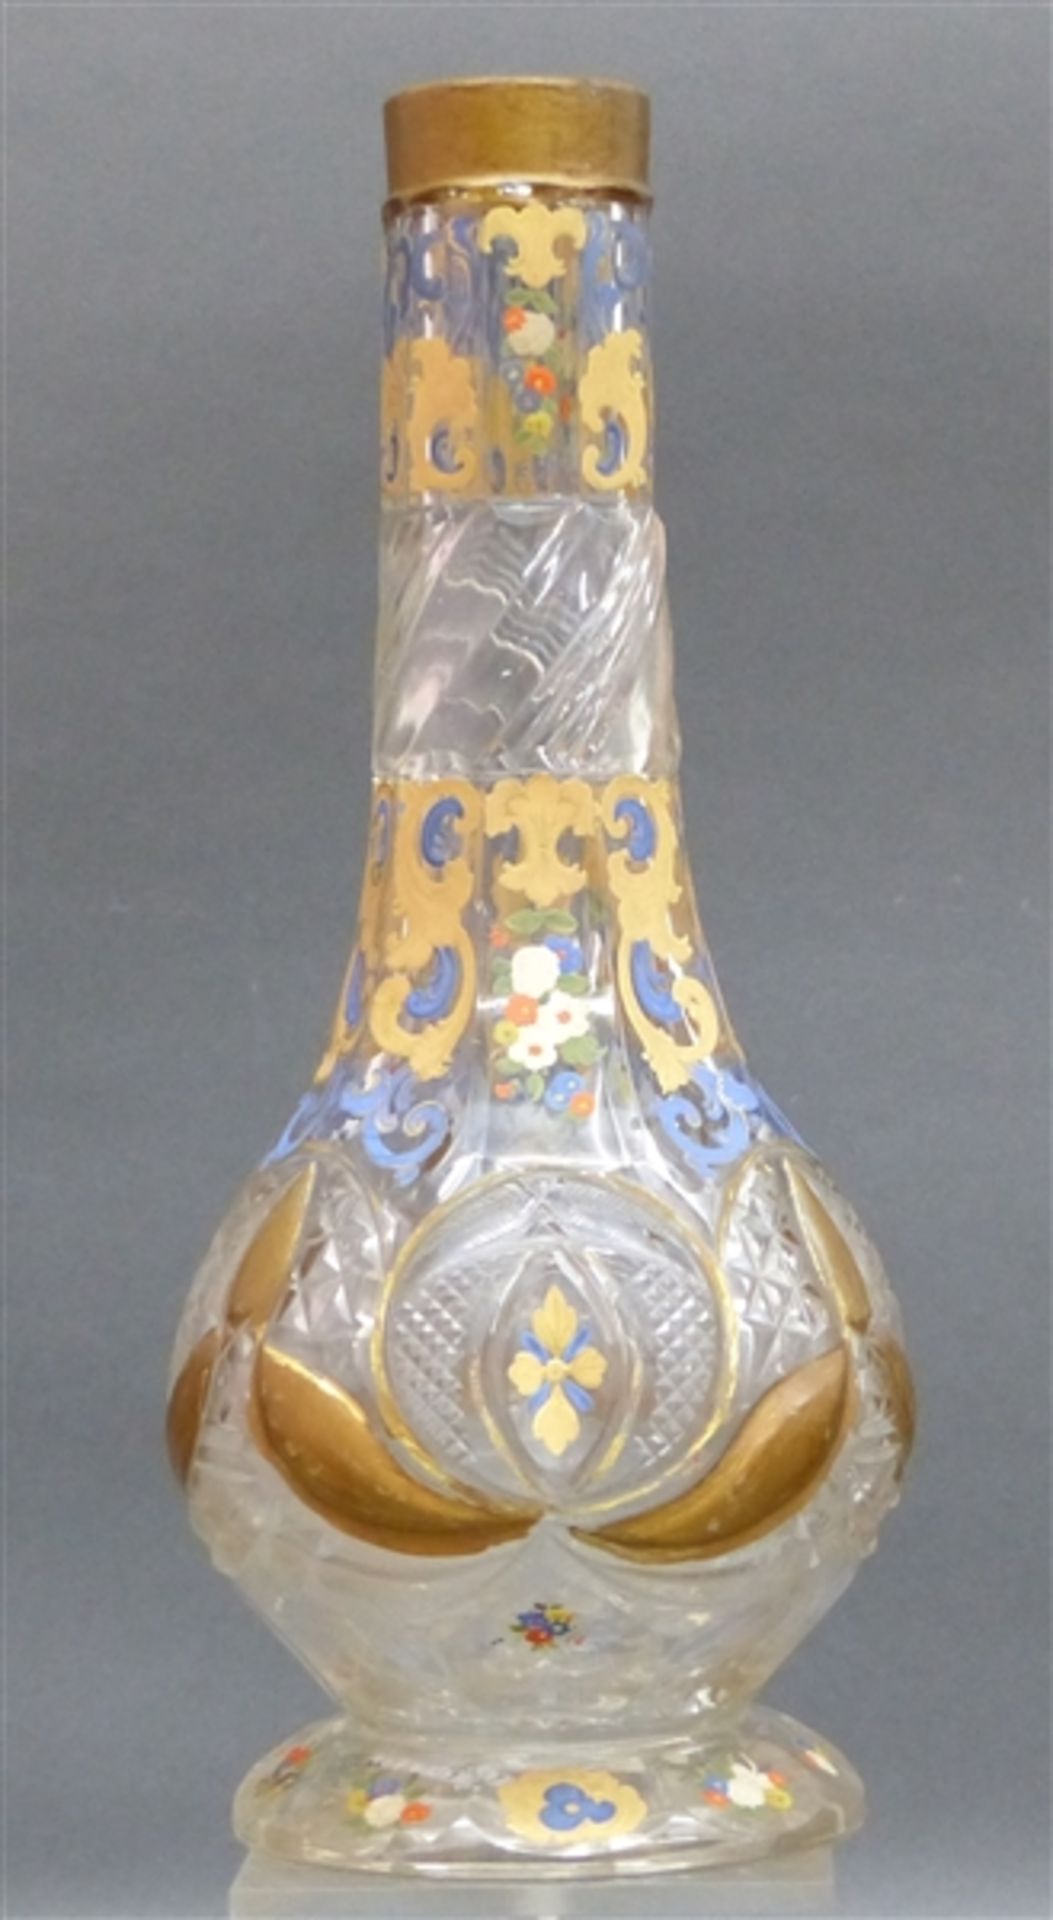 Glasvase farblos, böhmisch, floral bemalt und reicher Goddekor, 19. Jh., h 32 cm,